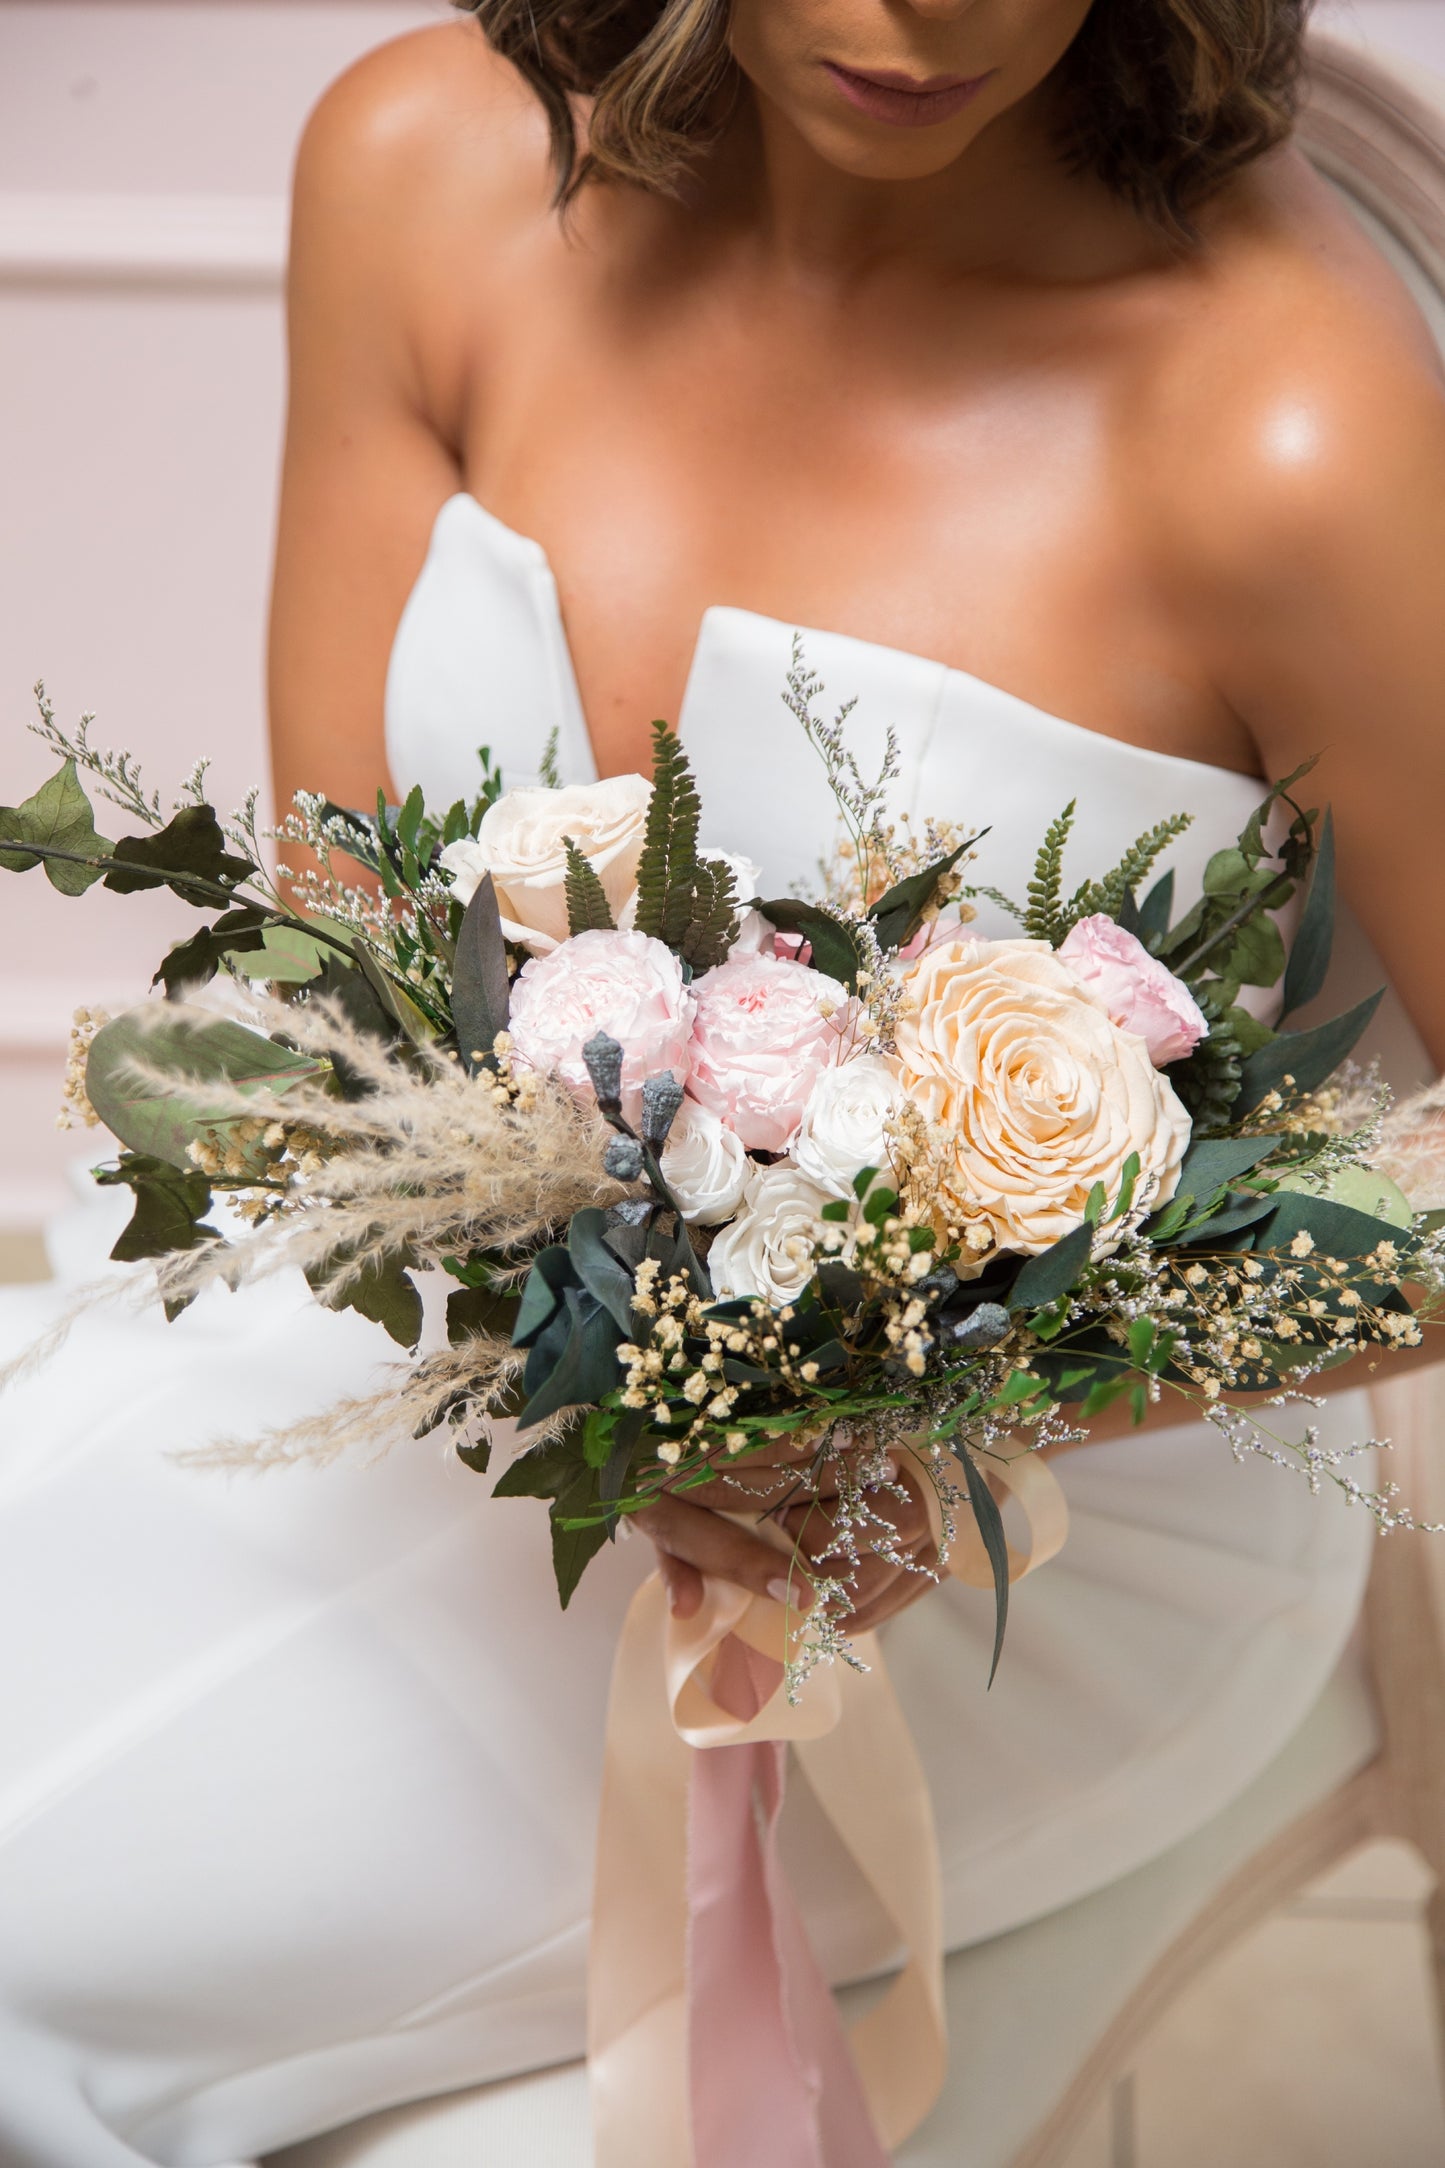 The Romantic Bridal Bouquet